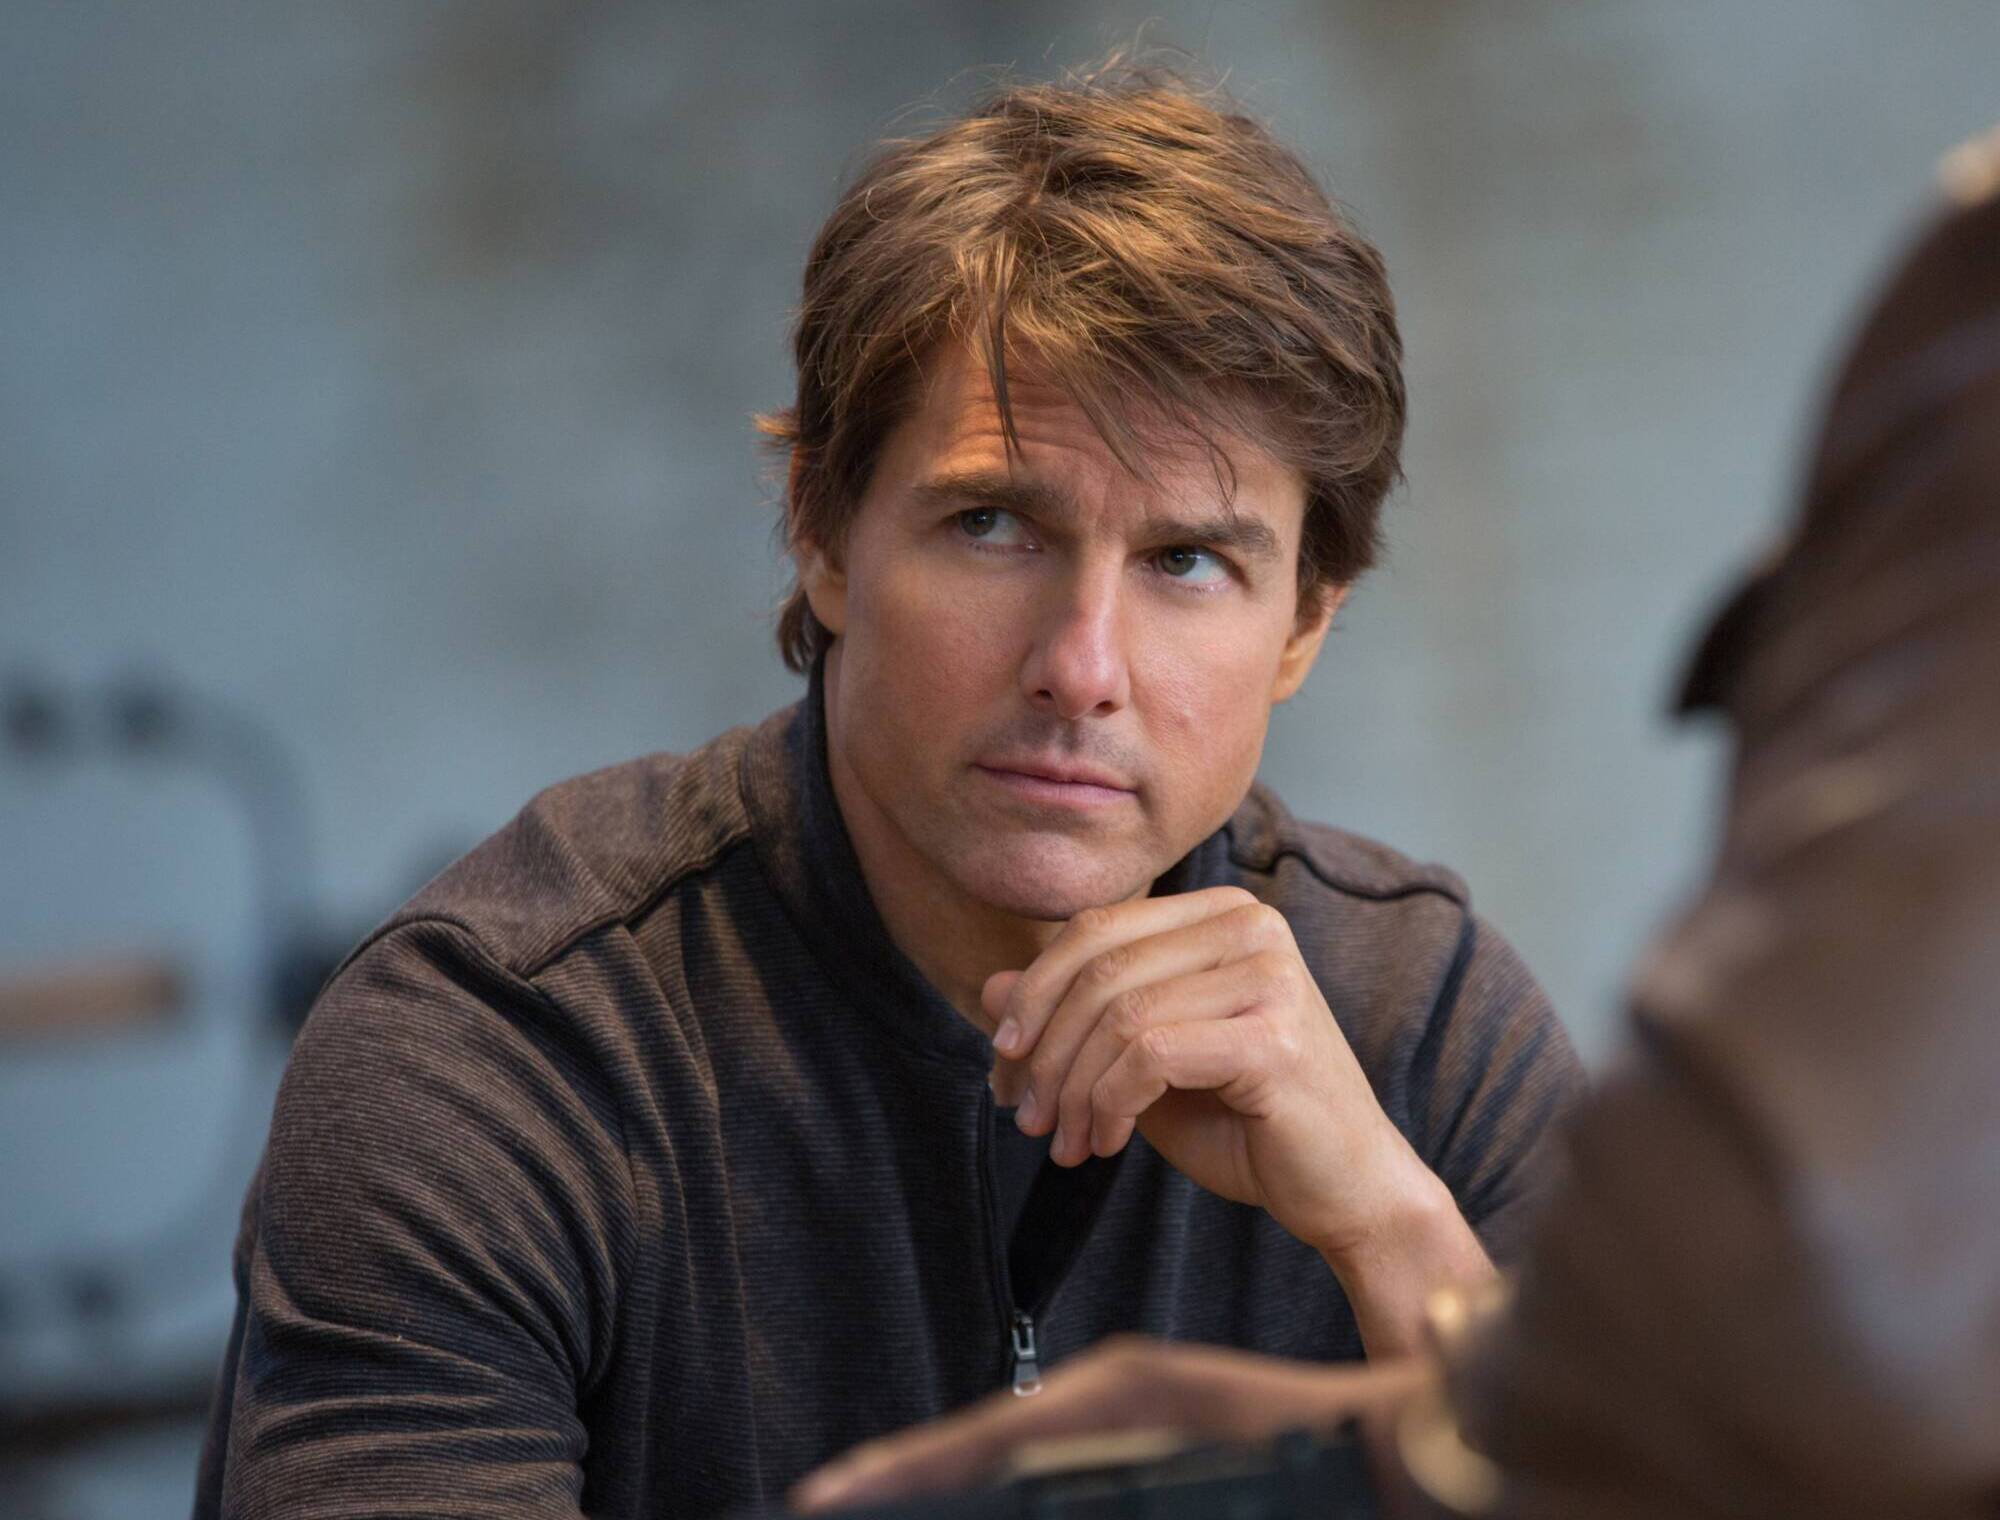 Filme de suspense com ótima atuação de Tom Cruise está na Netflix